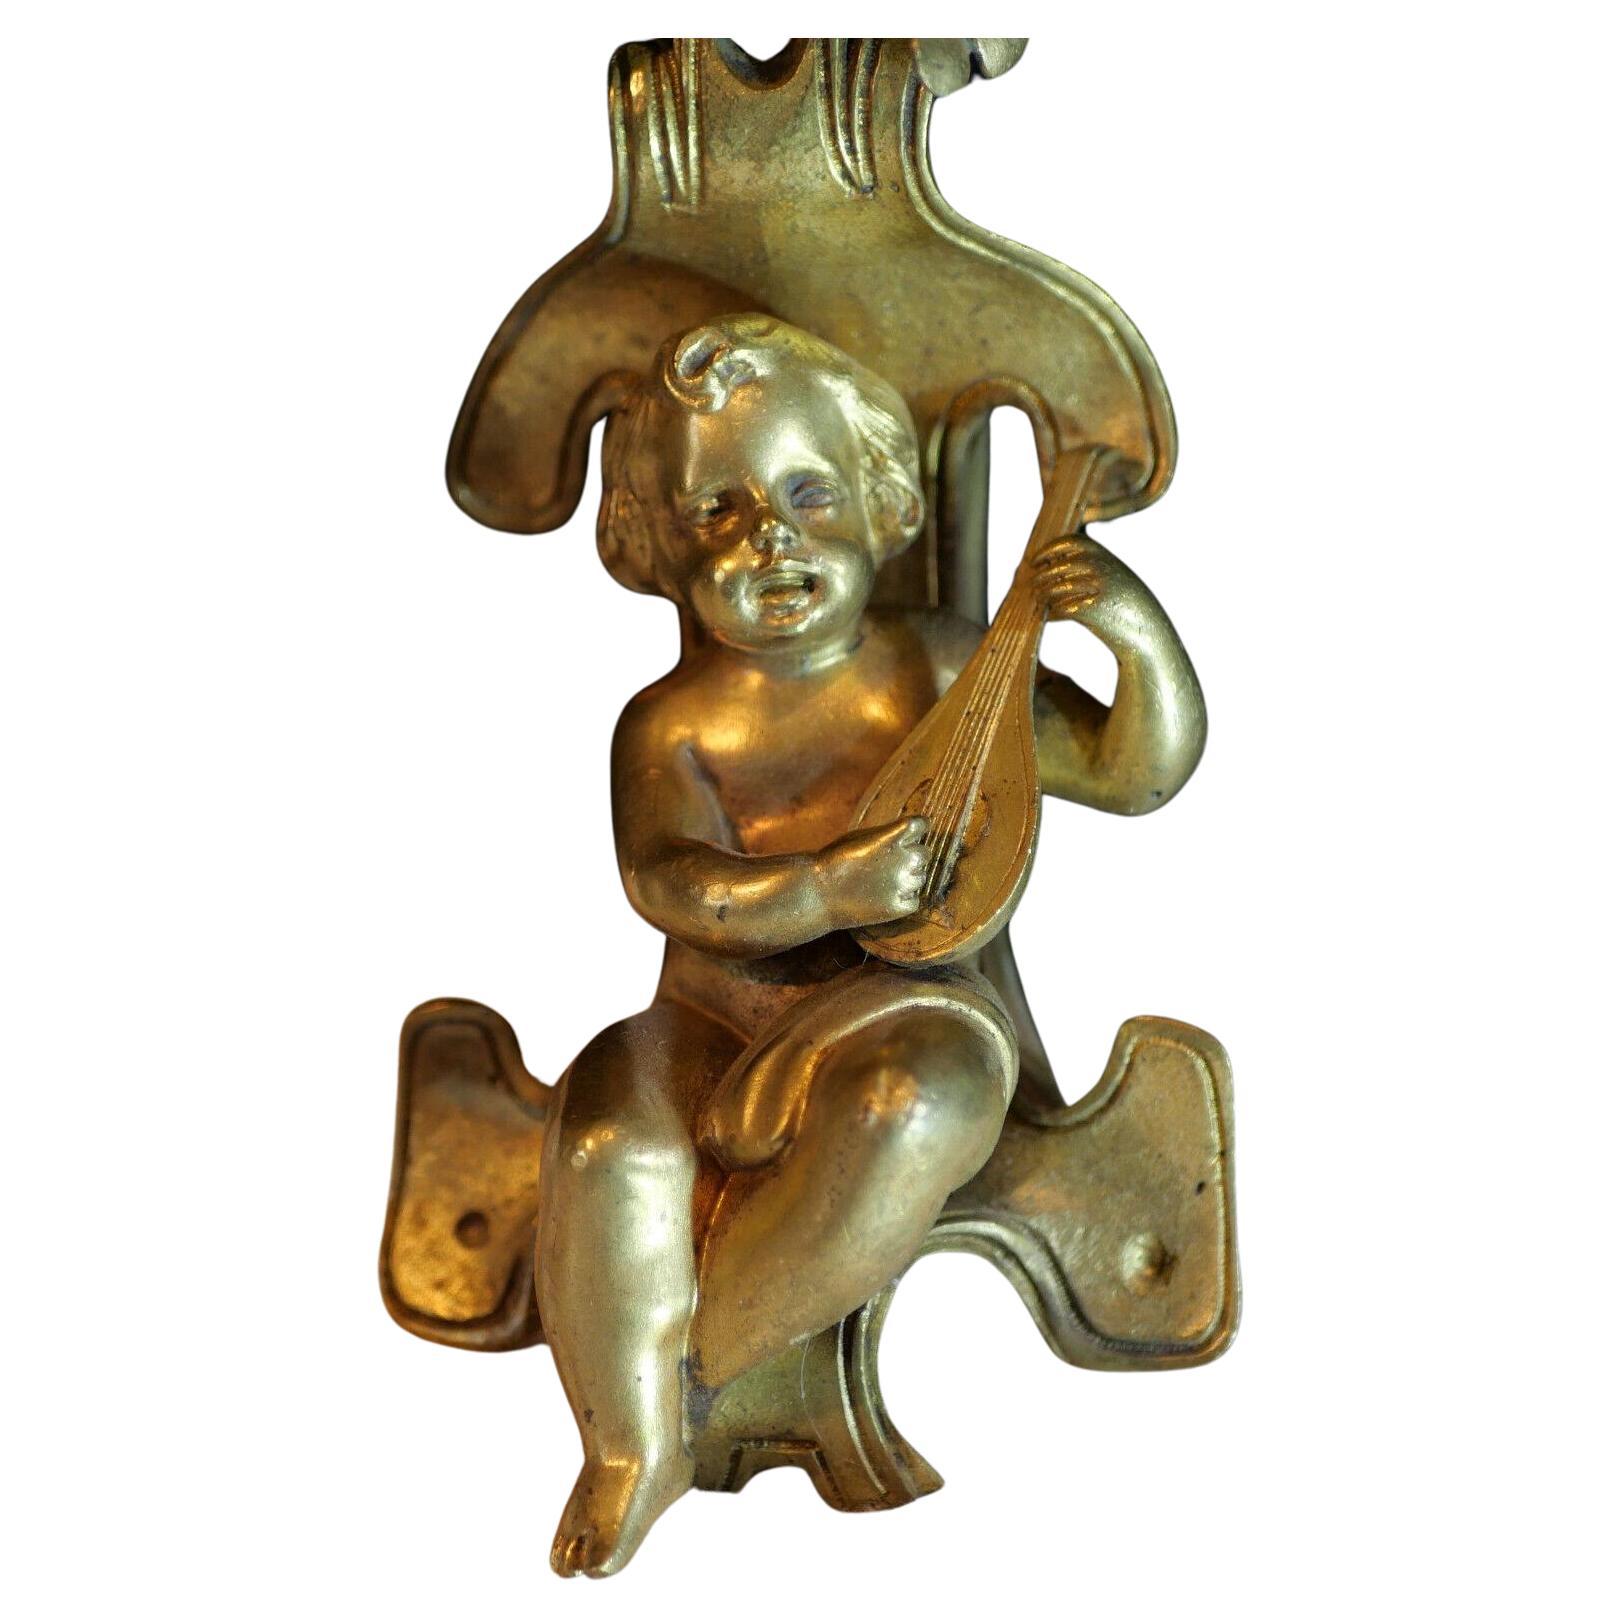 c1800 Paar französische Louis XVI Rokoko-Stil vergoldete Bronze Musikalische Putten. Der Cherub sitzt im schwebenden Laub. Ausgezeichnetes Detail, sehr hohe Qualität Paar Sconces. Ursprünglicher, nicht elektrifizierter Zustand.